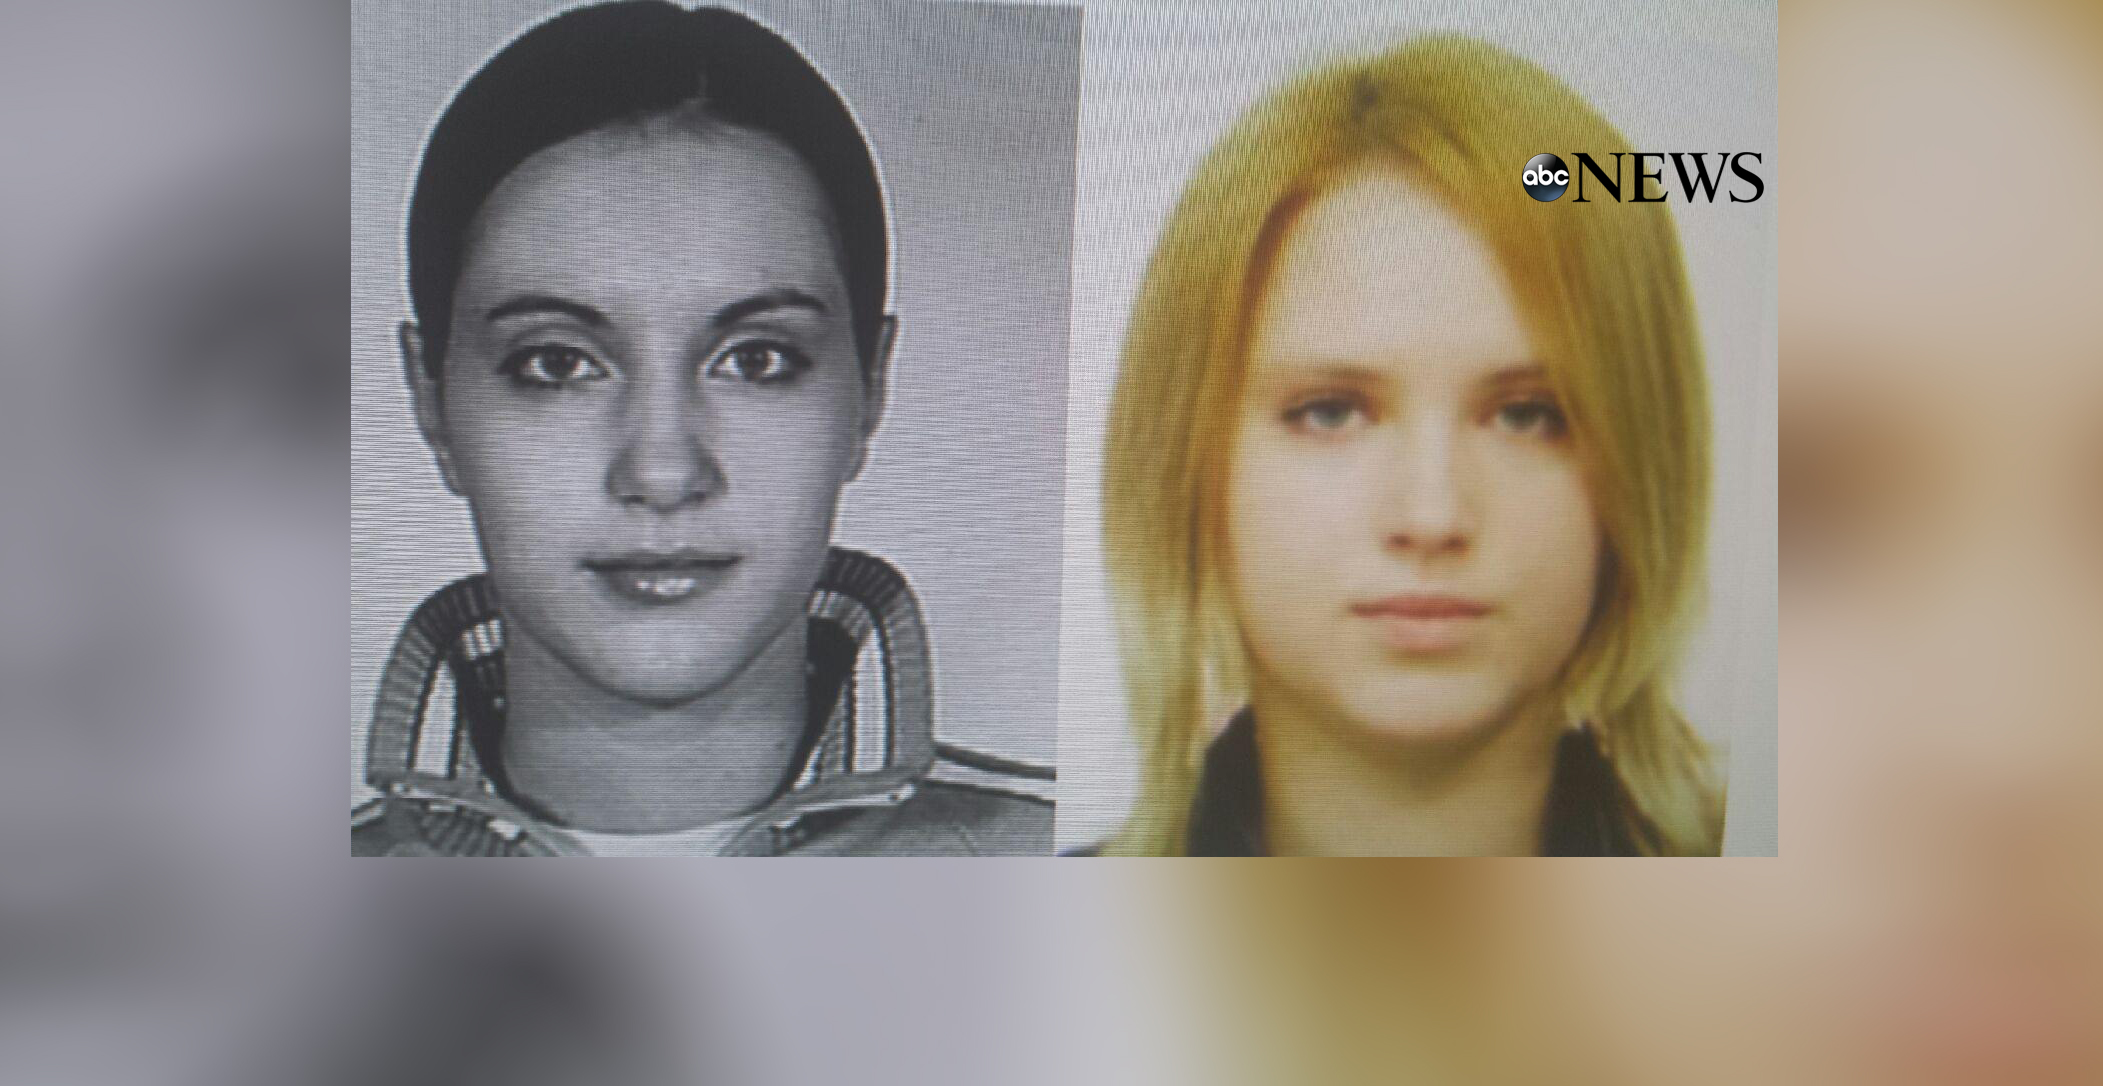 PHOTO: Chernykh sisters Mariya, right, and Tatiana, left.